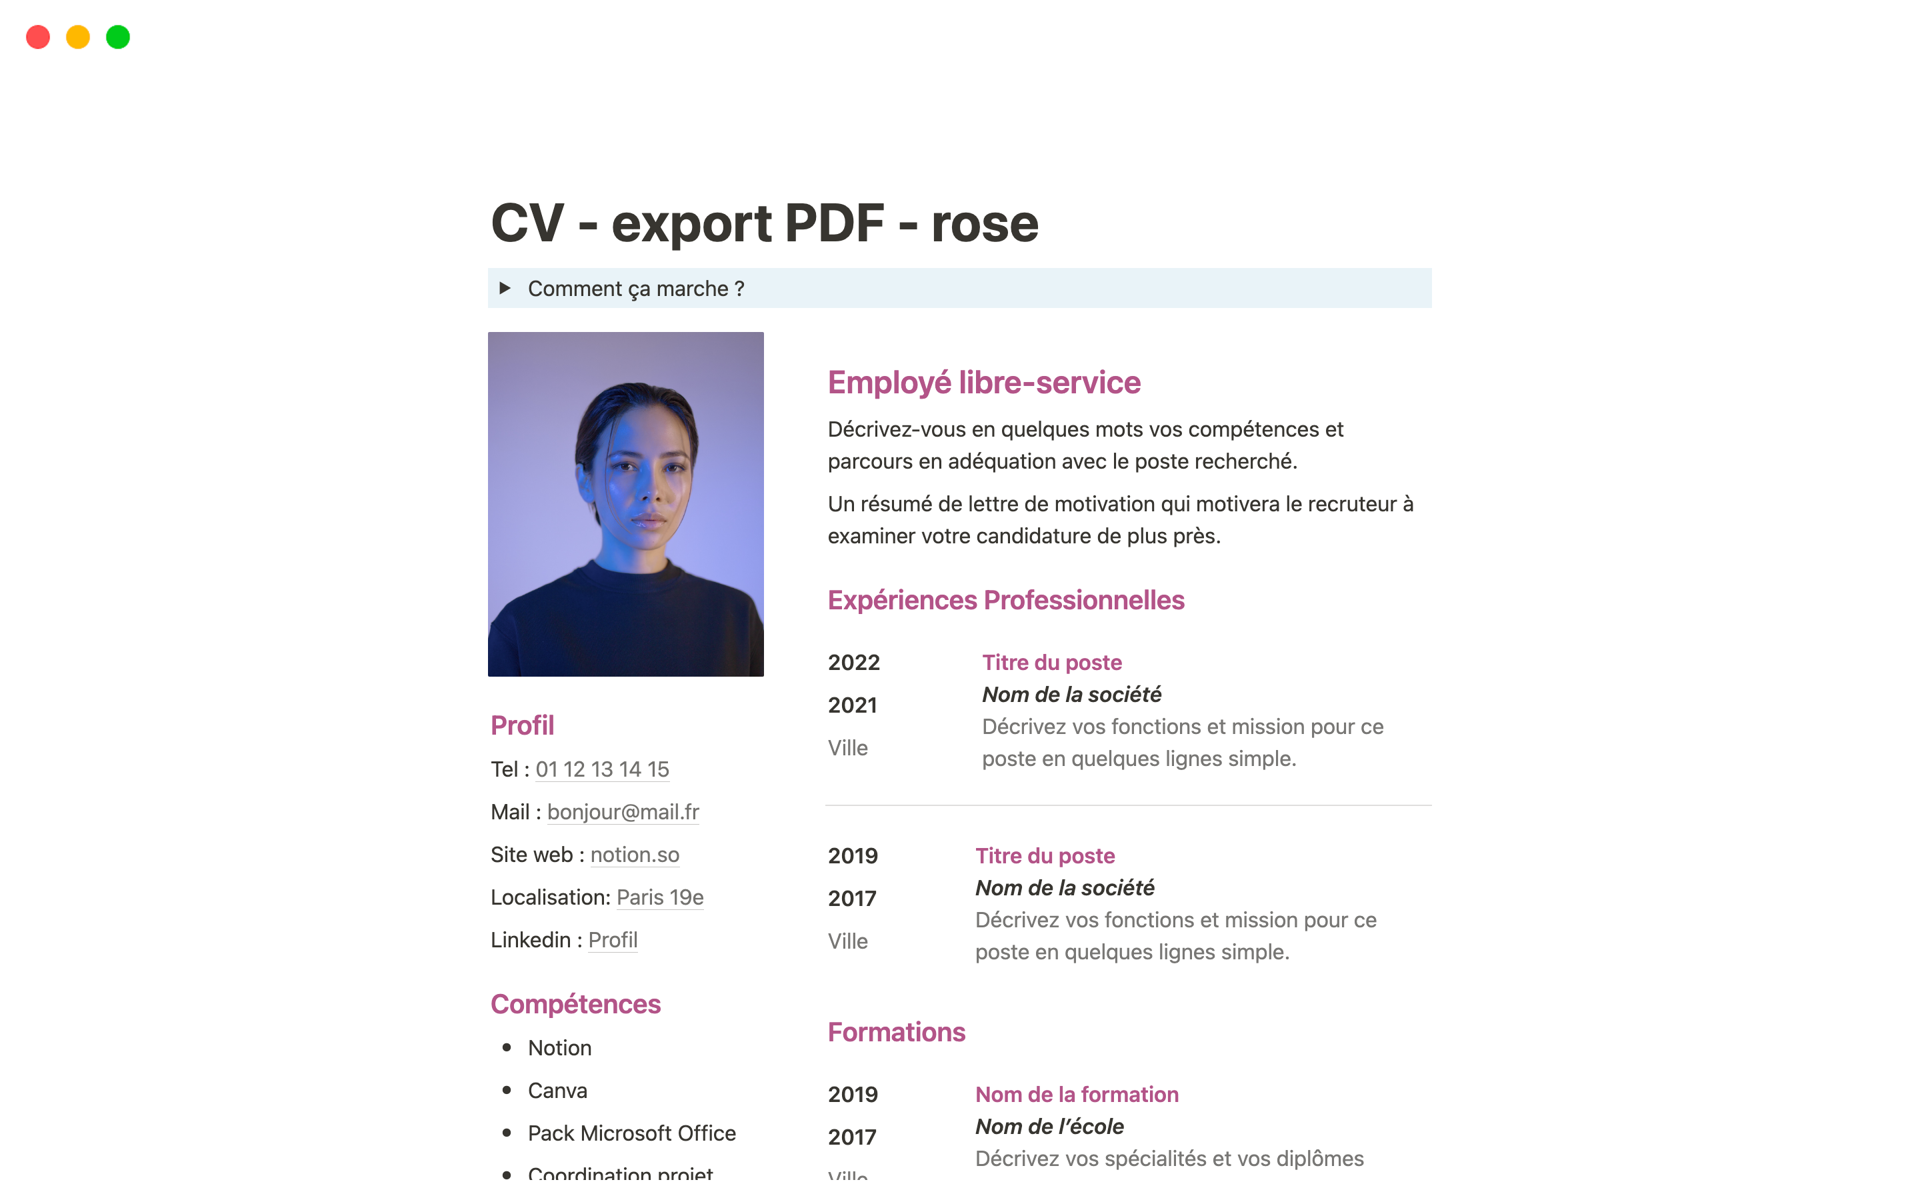 Uma prévia do modelo para CV simple pour export PDF - rose